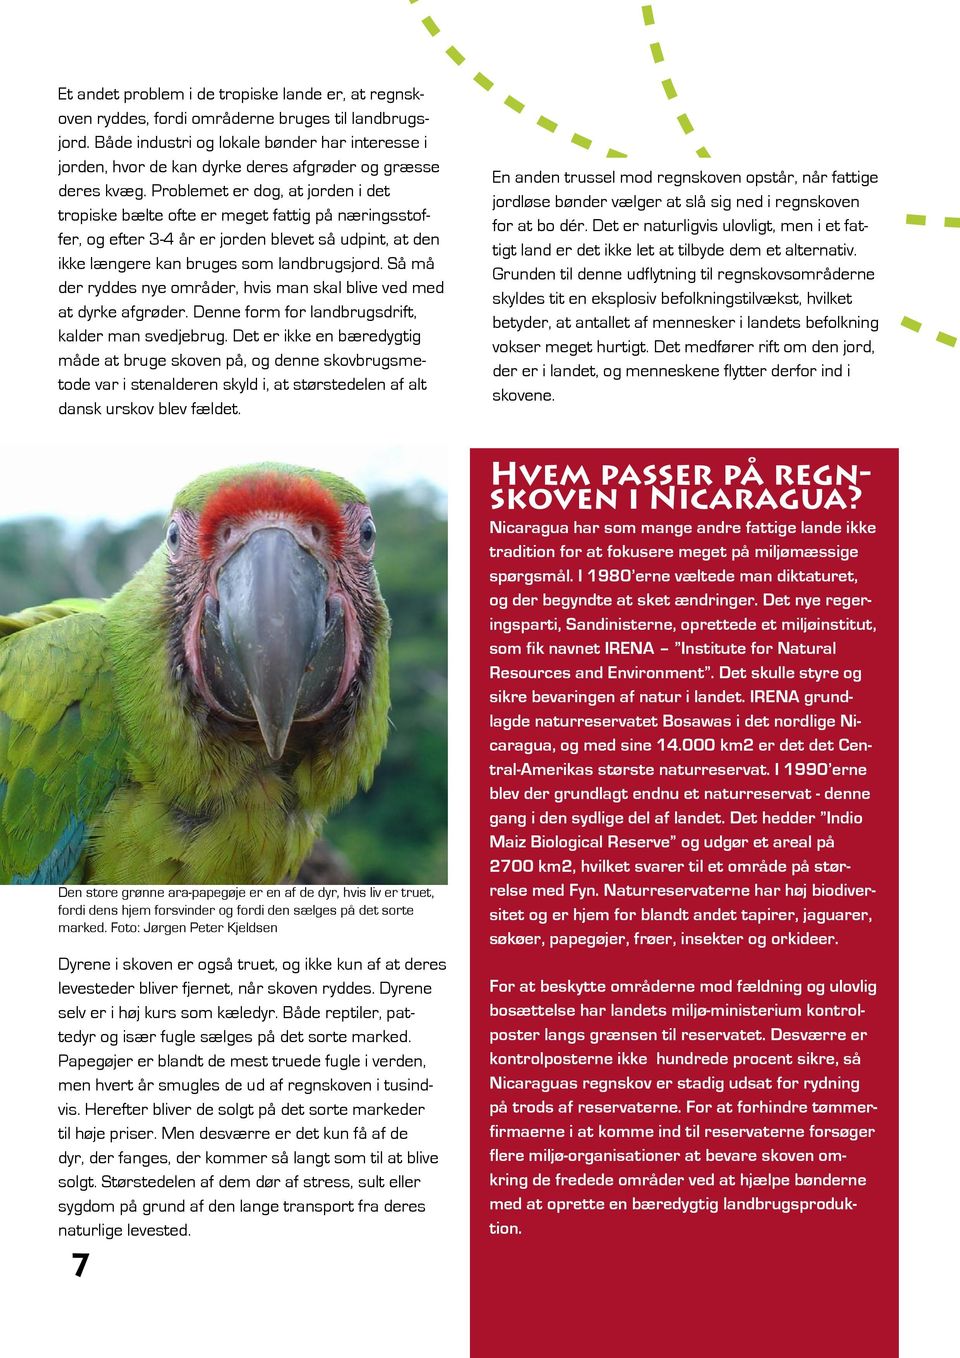 solid meddelelse Emuler PAPEGØJE SAVNES UNDERVISNINGSMATERIALE KLASSE. Lær om Regnskoven Klimaer Ara-papegøjen  Bæredygtighed Fotosyntese Nicaragua - PDF Gratis download